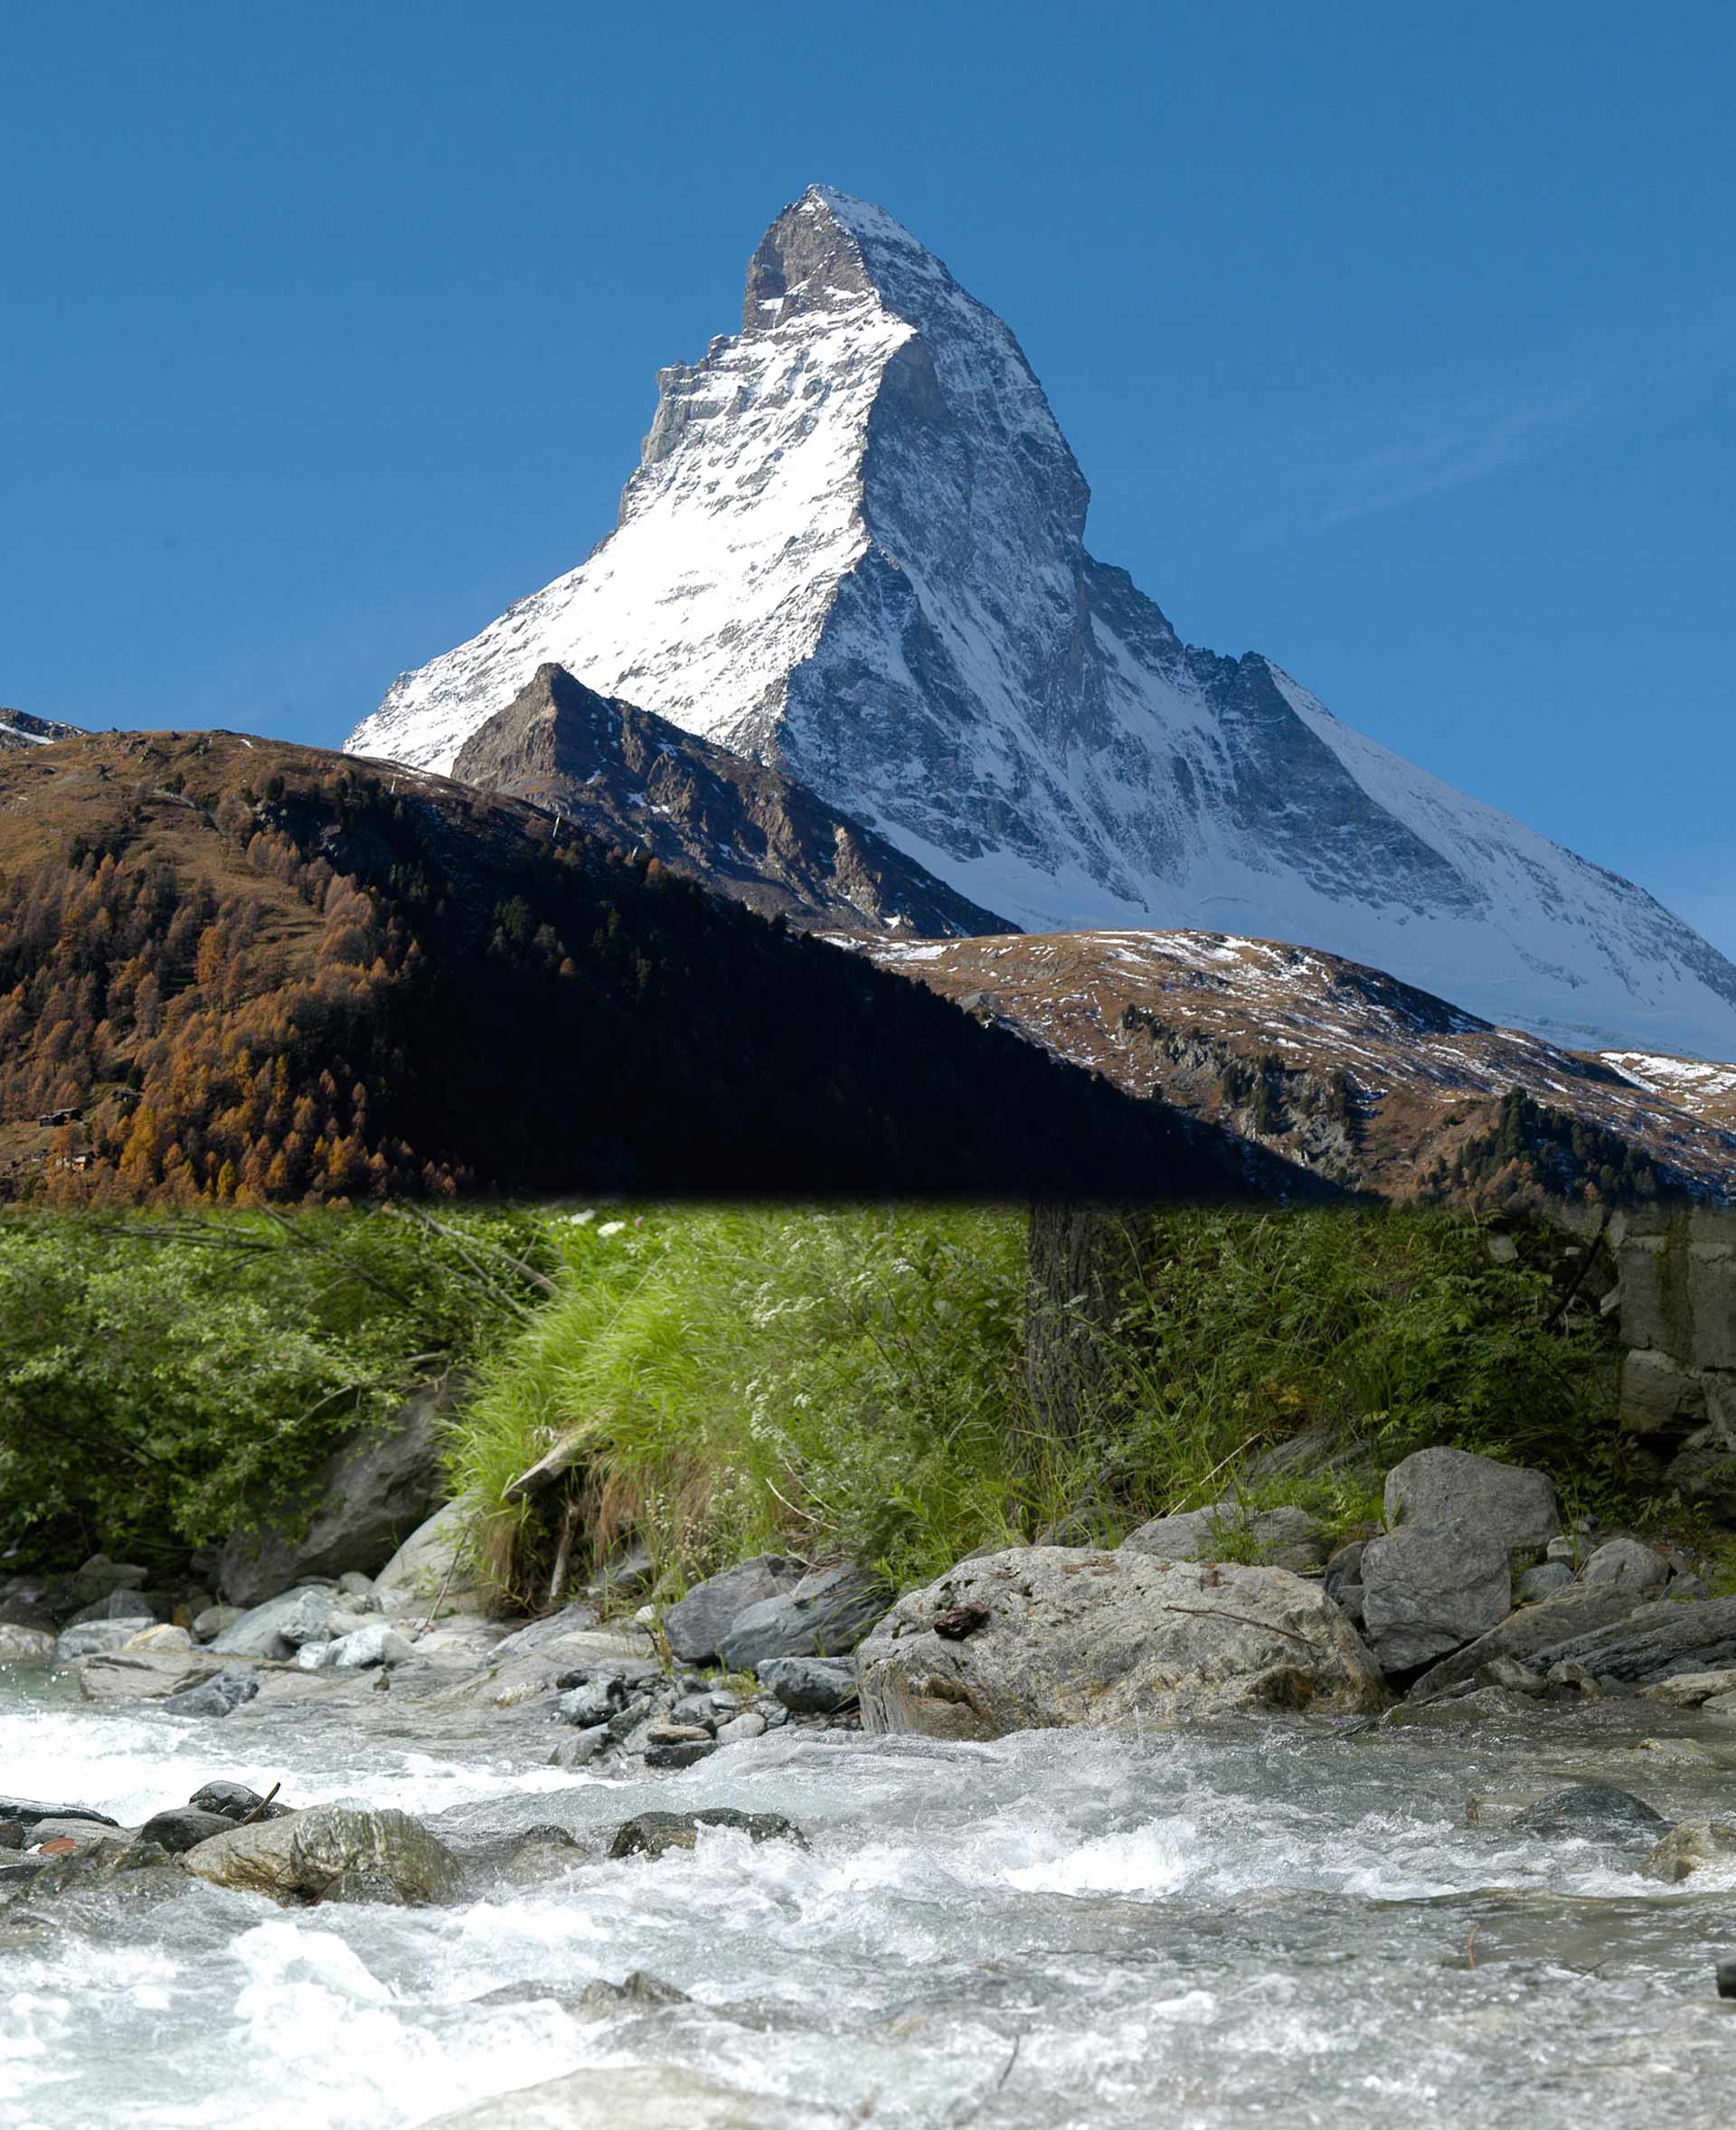 2015 â€“ Feiern und Feste fÃ¼r das Matterhorn Im Jahr 2015 wird das Matterhorn gefeiert. Vor 150 Jahren, am 14. Juli 1865, standen die ersten Menschen auf dem Gipfel. Das wird gefeiert â€“ mit der NeuerÃ¶ffnung der HÃ¶rnlihÃ¼tte, den Freilichtspielen, einer Epochenwoche im Juli und vielen vielen weiteren AktivitÃ¤ten.